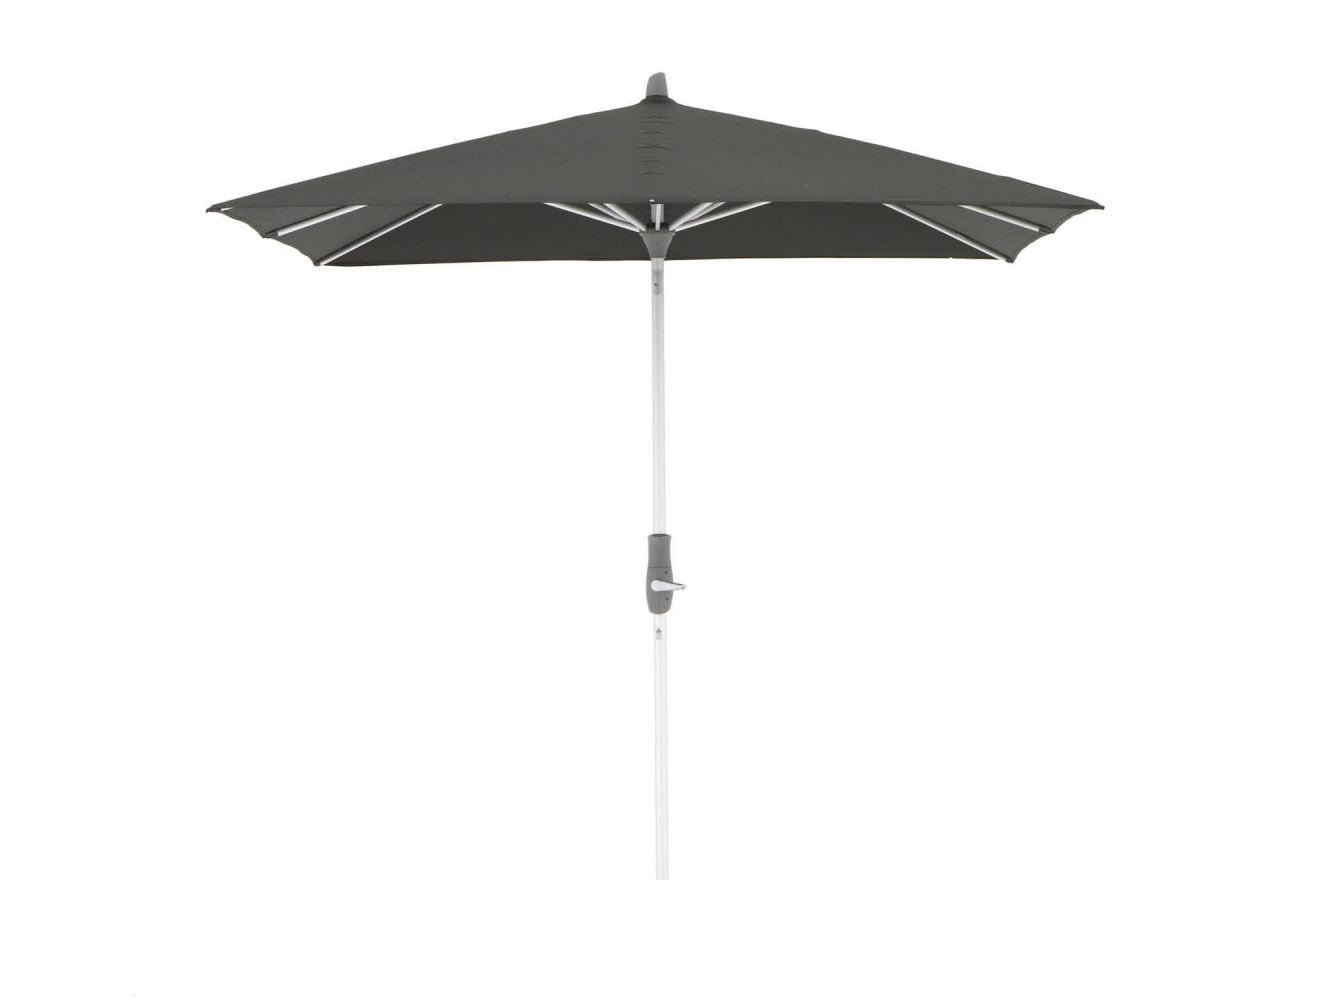 Glatz Alu Twist parasol 240x240cm